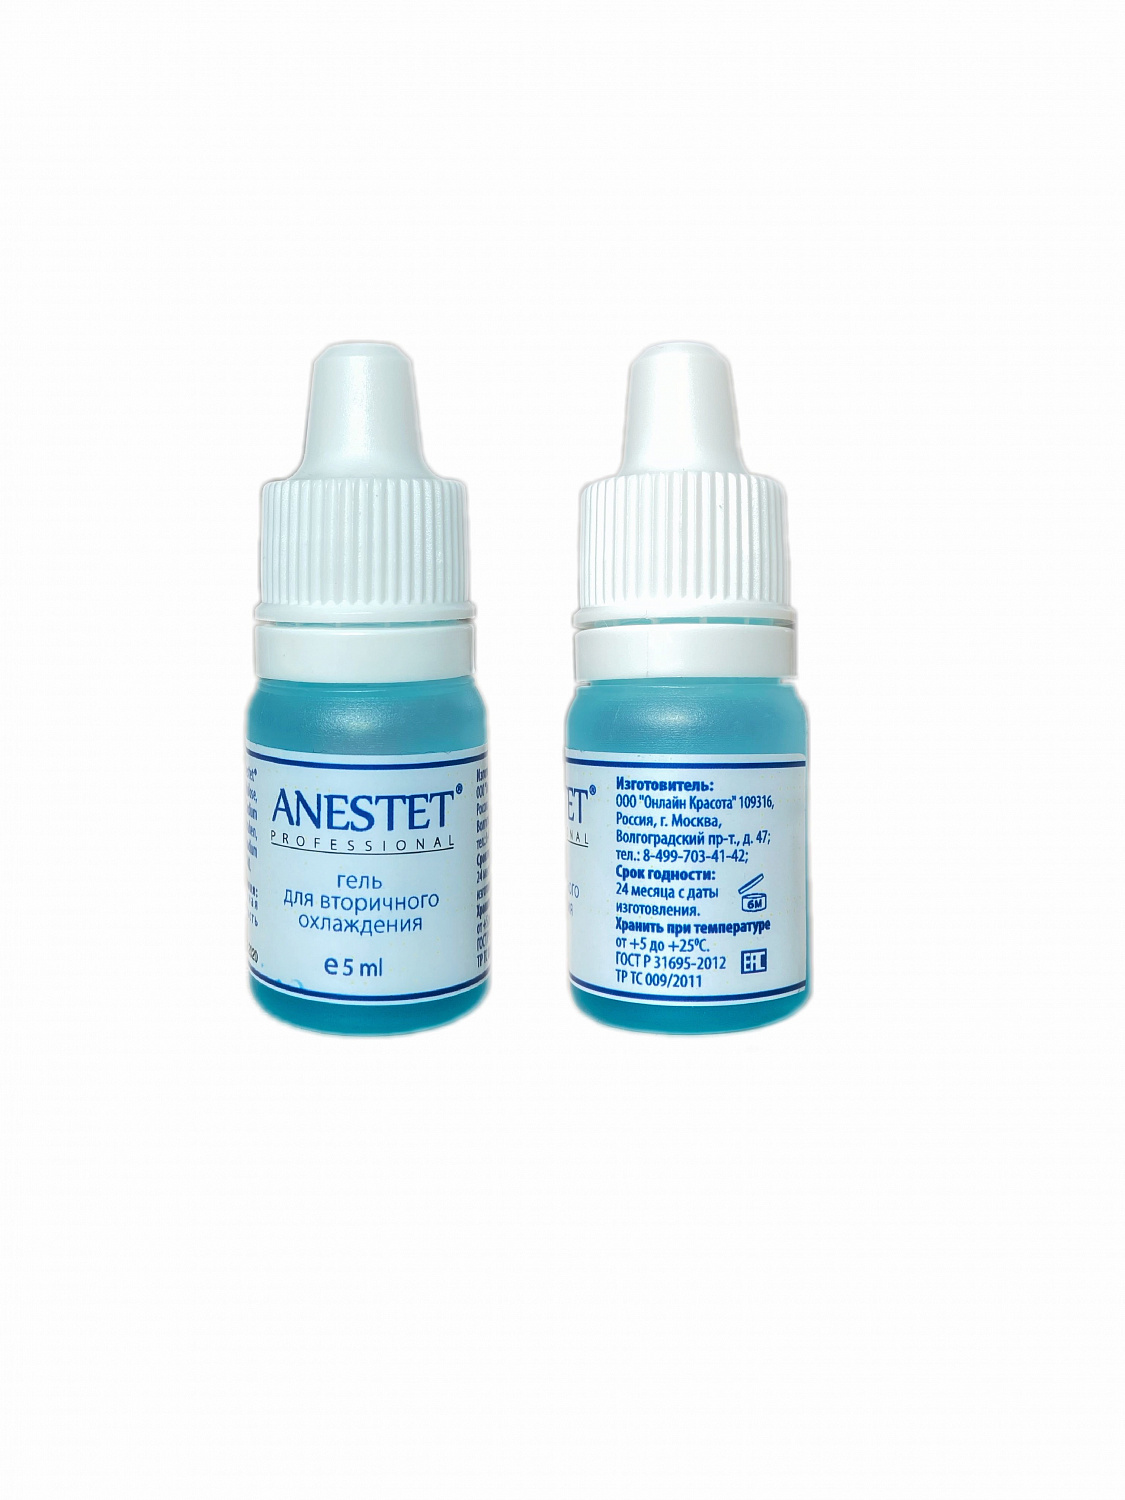 Анестетик гель ANESTET professional (Анестет) - вторичный 5мл